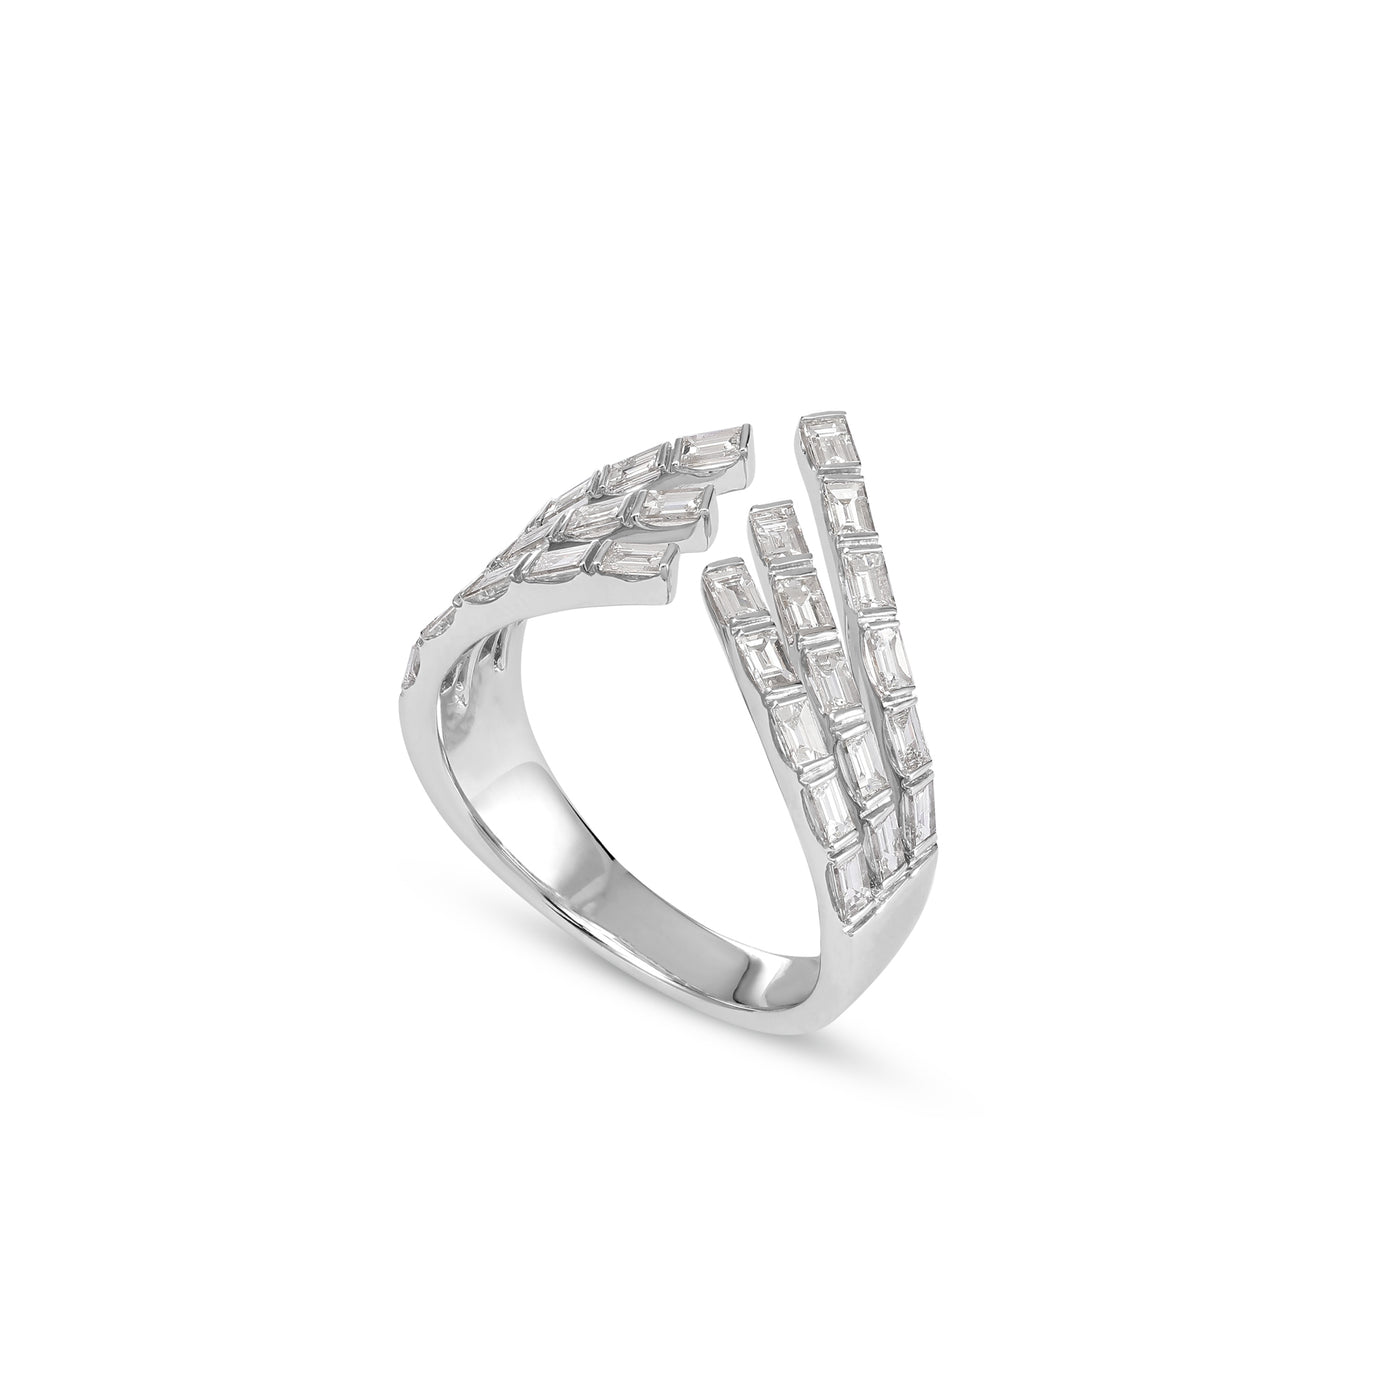 White Gold Baguette Diamond Ring